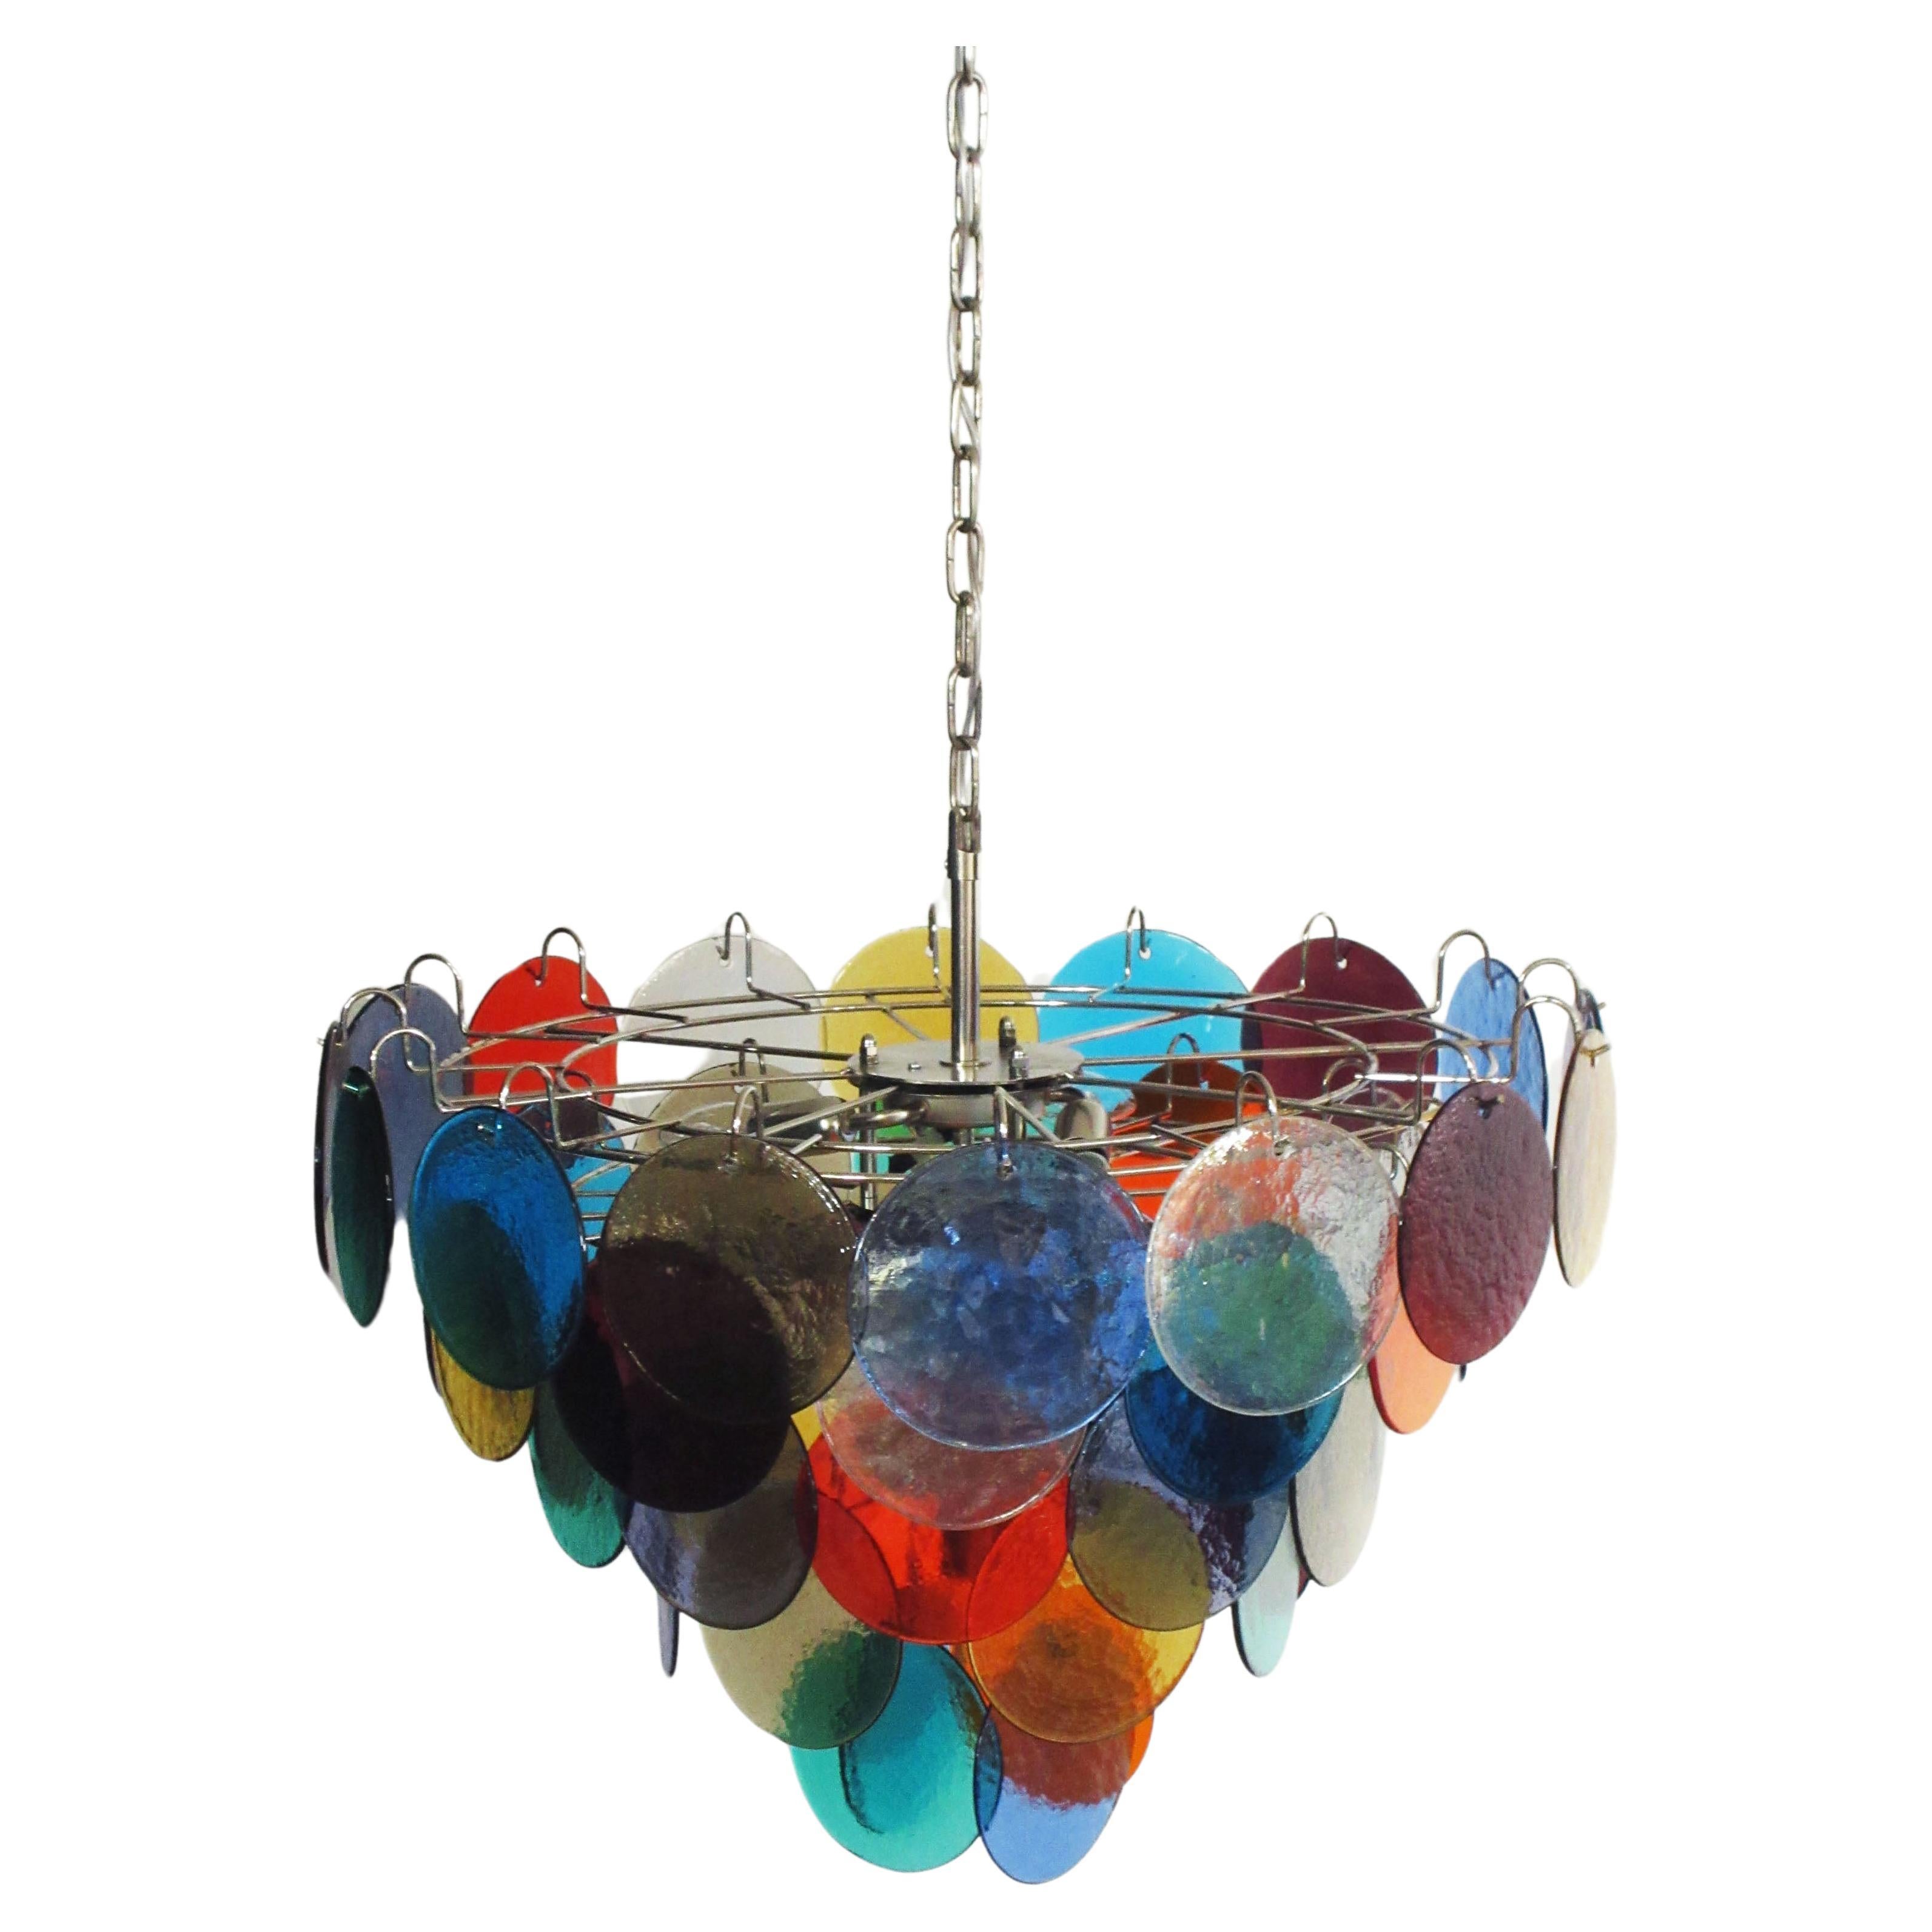 Chaque lustre comporte 50 disques en verre multicolore de Murano. Les verres sont désormais indisponibles, ils ont la particularité de refléter une multiplicité de couleurs, ce qui fait du lustre une véritable œuvre d'art. Cadre en métal